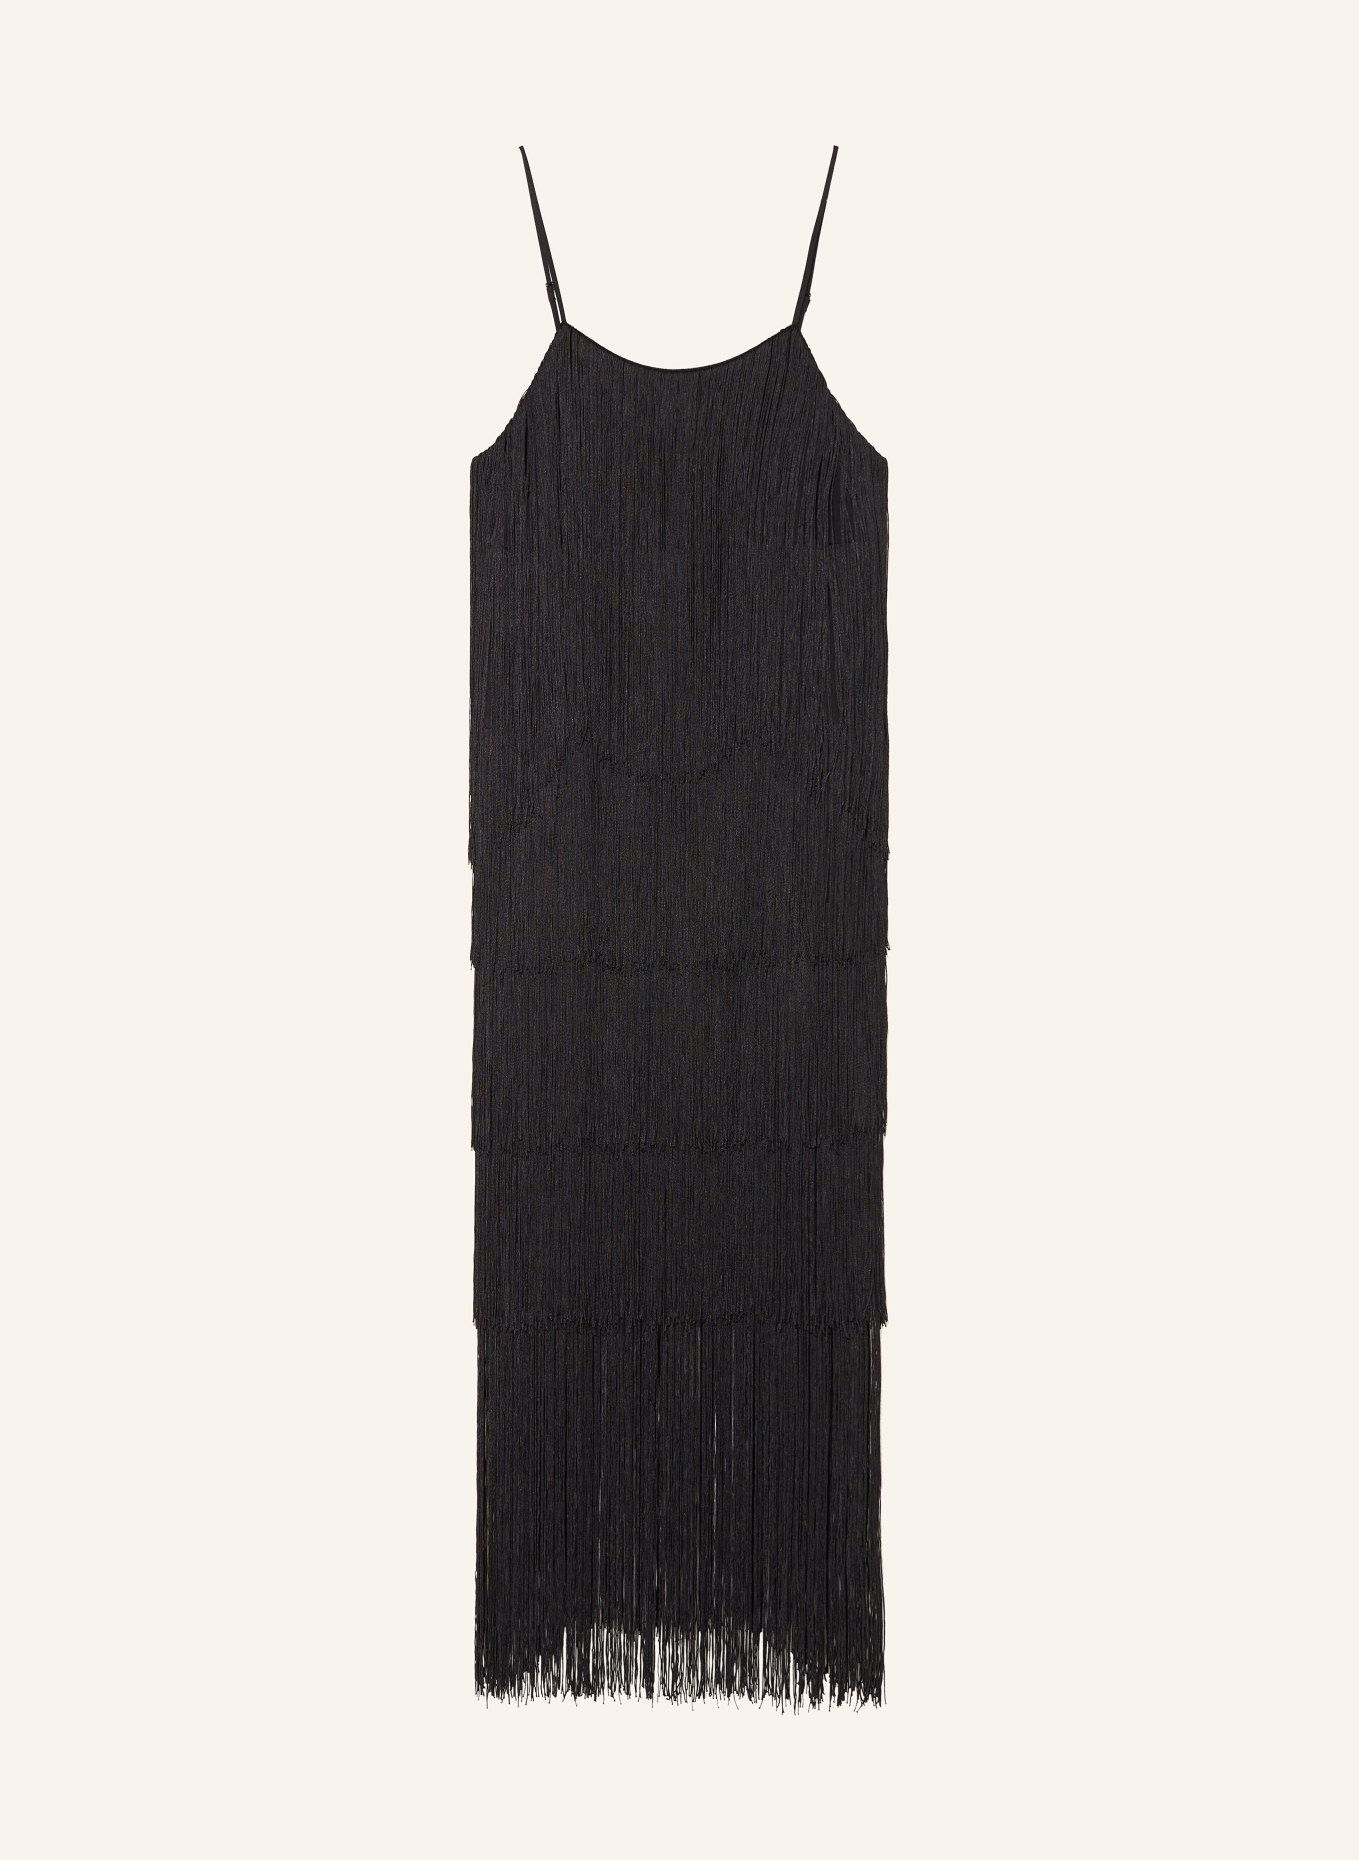 ENVELOPE 1976 Dress FRINGE with fringes, Color: BLACK (Image 1)